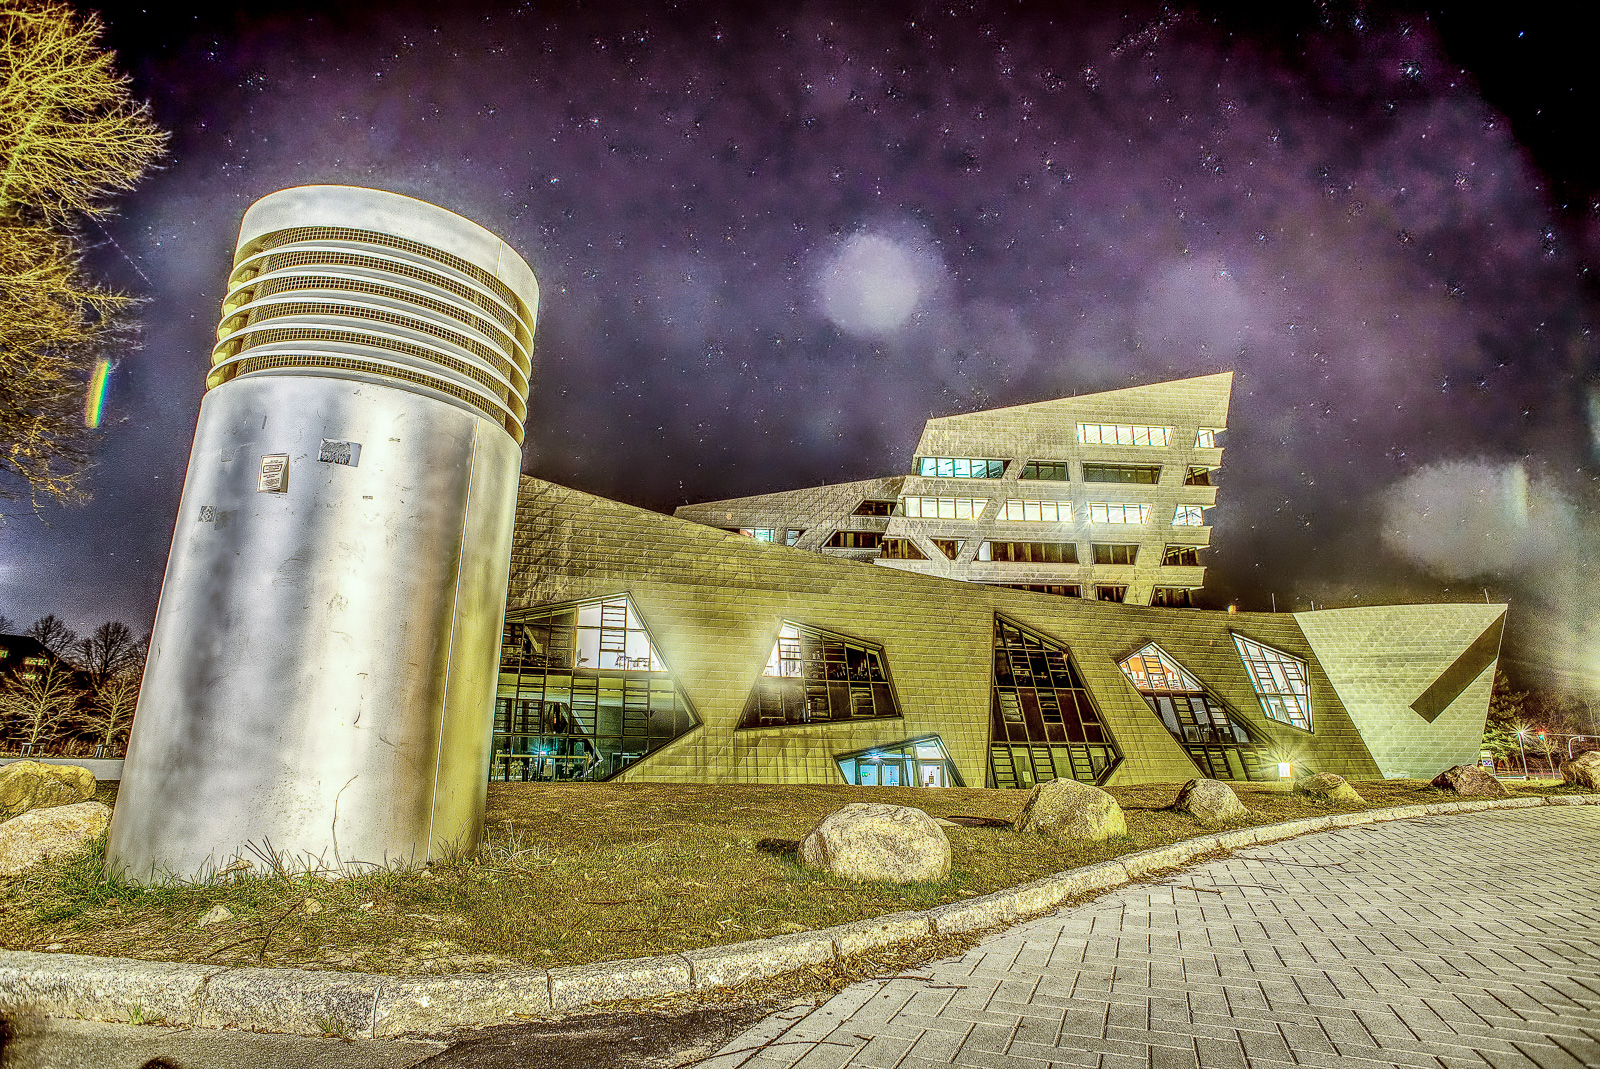 Universität Lüneburg, Hauptgebäude: Der futuristische Bau in kontrastreicher Bearbeitung unter Sternenhimmel. Im Vordergrund ein metallisches Gebilde, vermutlich Belüftung einer Tiefgarage